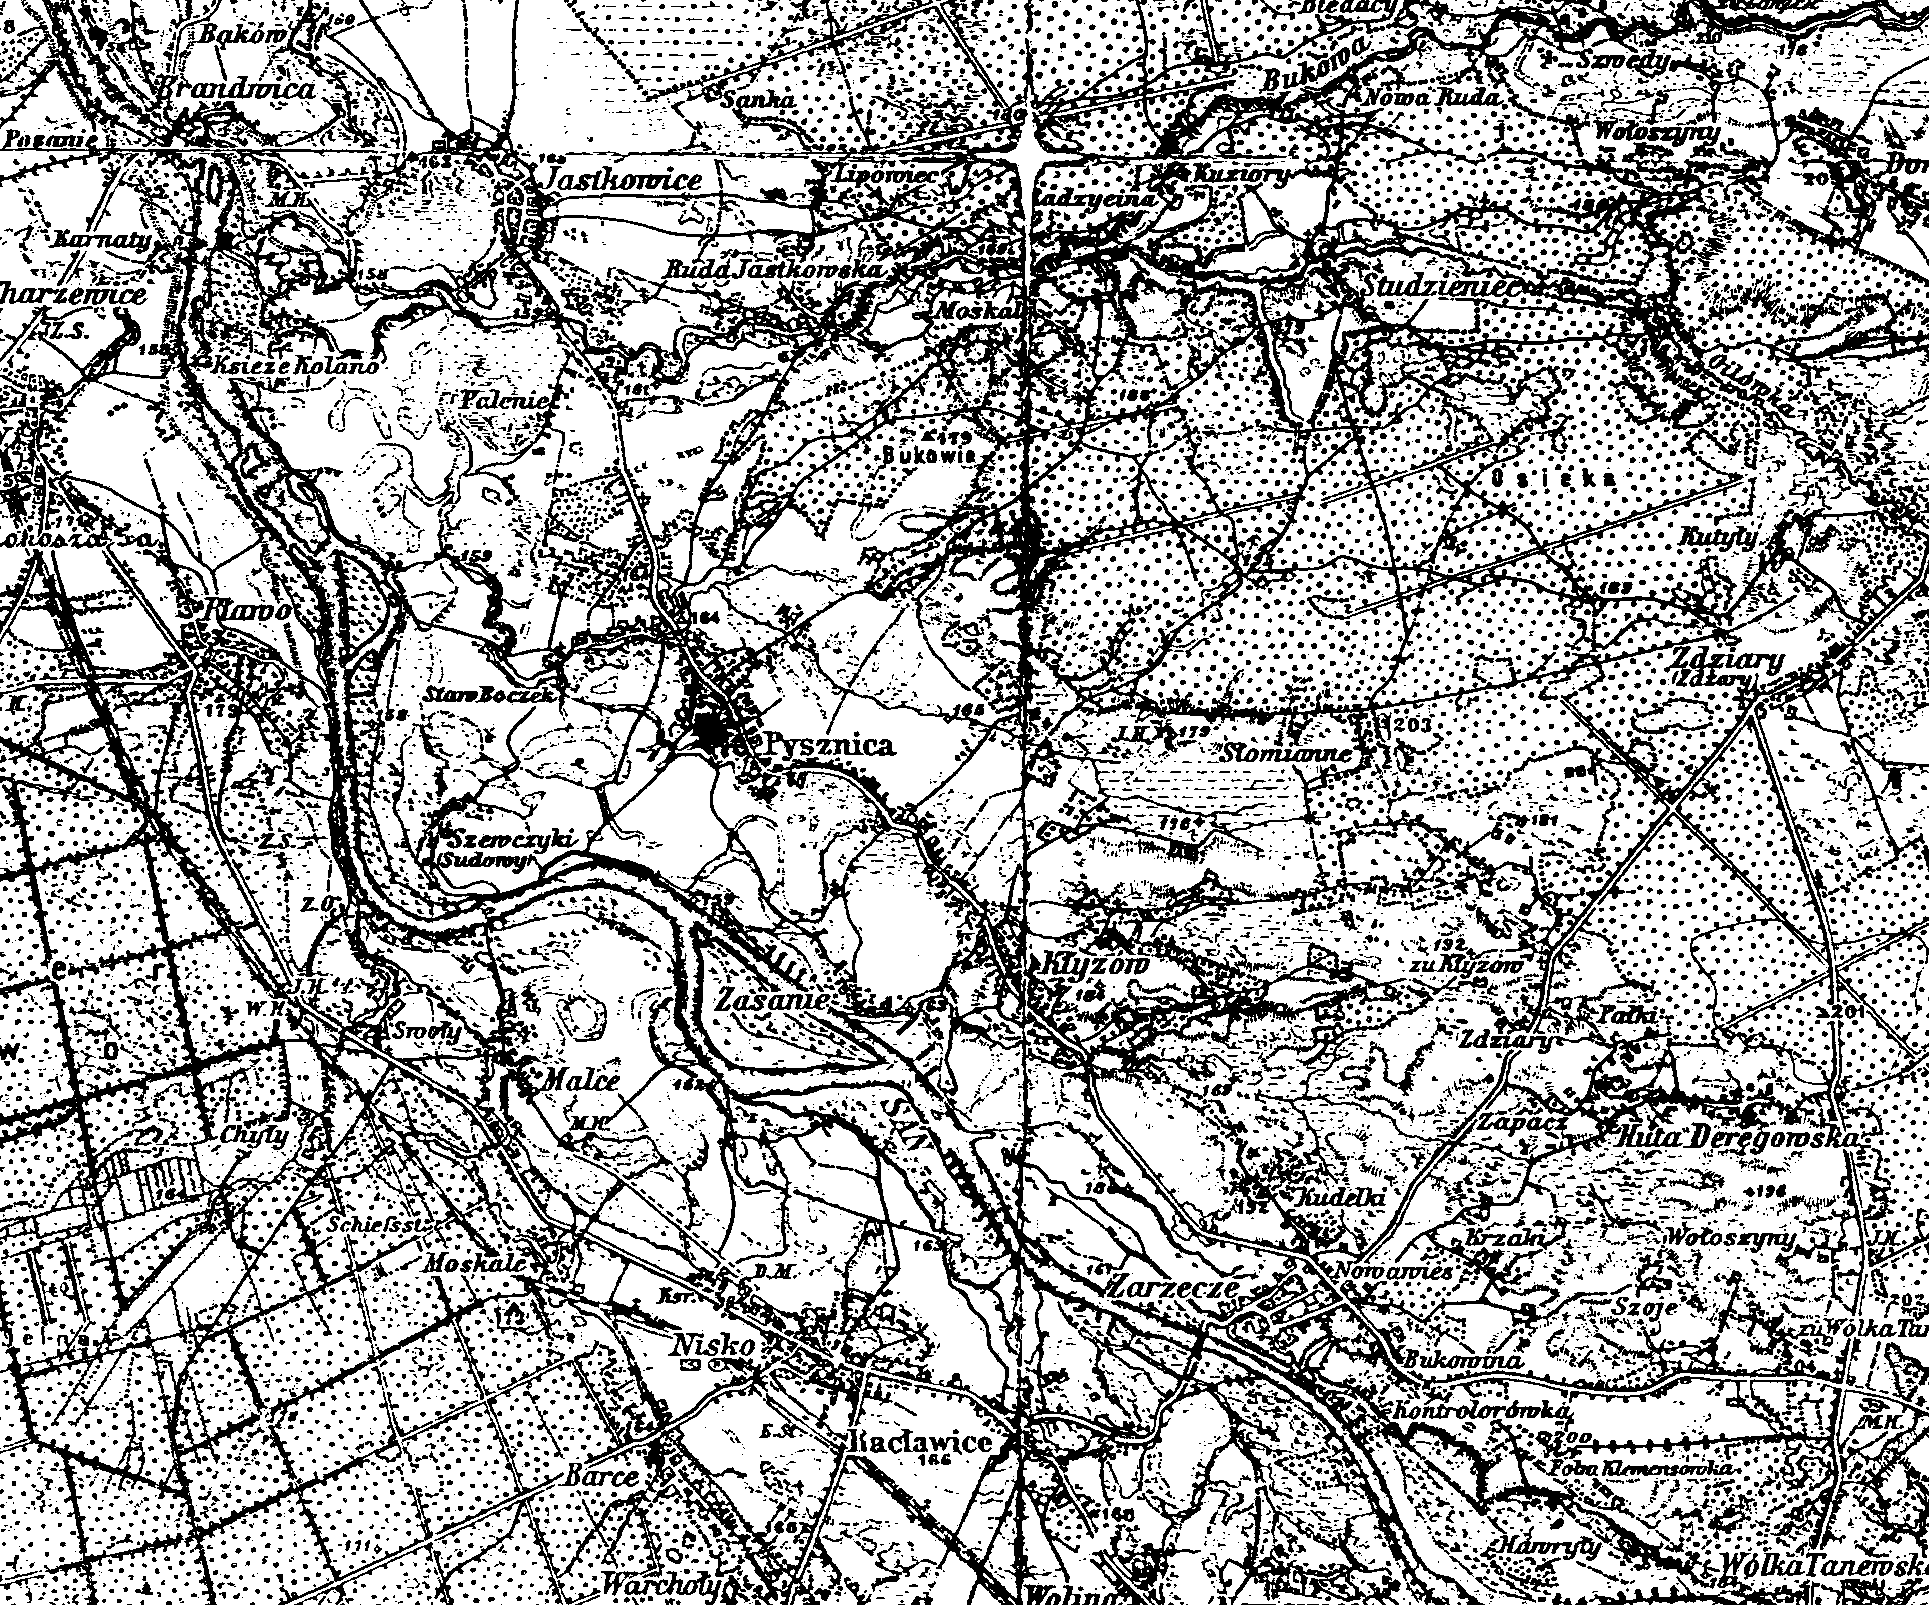 Jednym z najstarszych dostępnych dokumentów, na którym dobrze widać układ komunikacyjny jest mapa z 1914 r. Układ sieci drogowej niewiele różni się od obecnego.